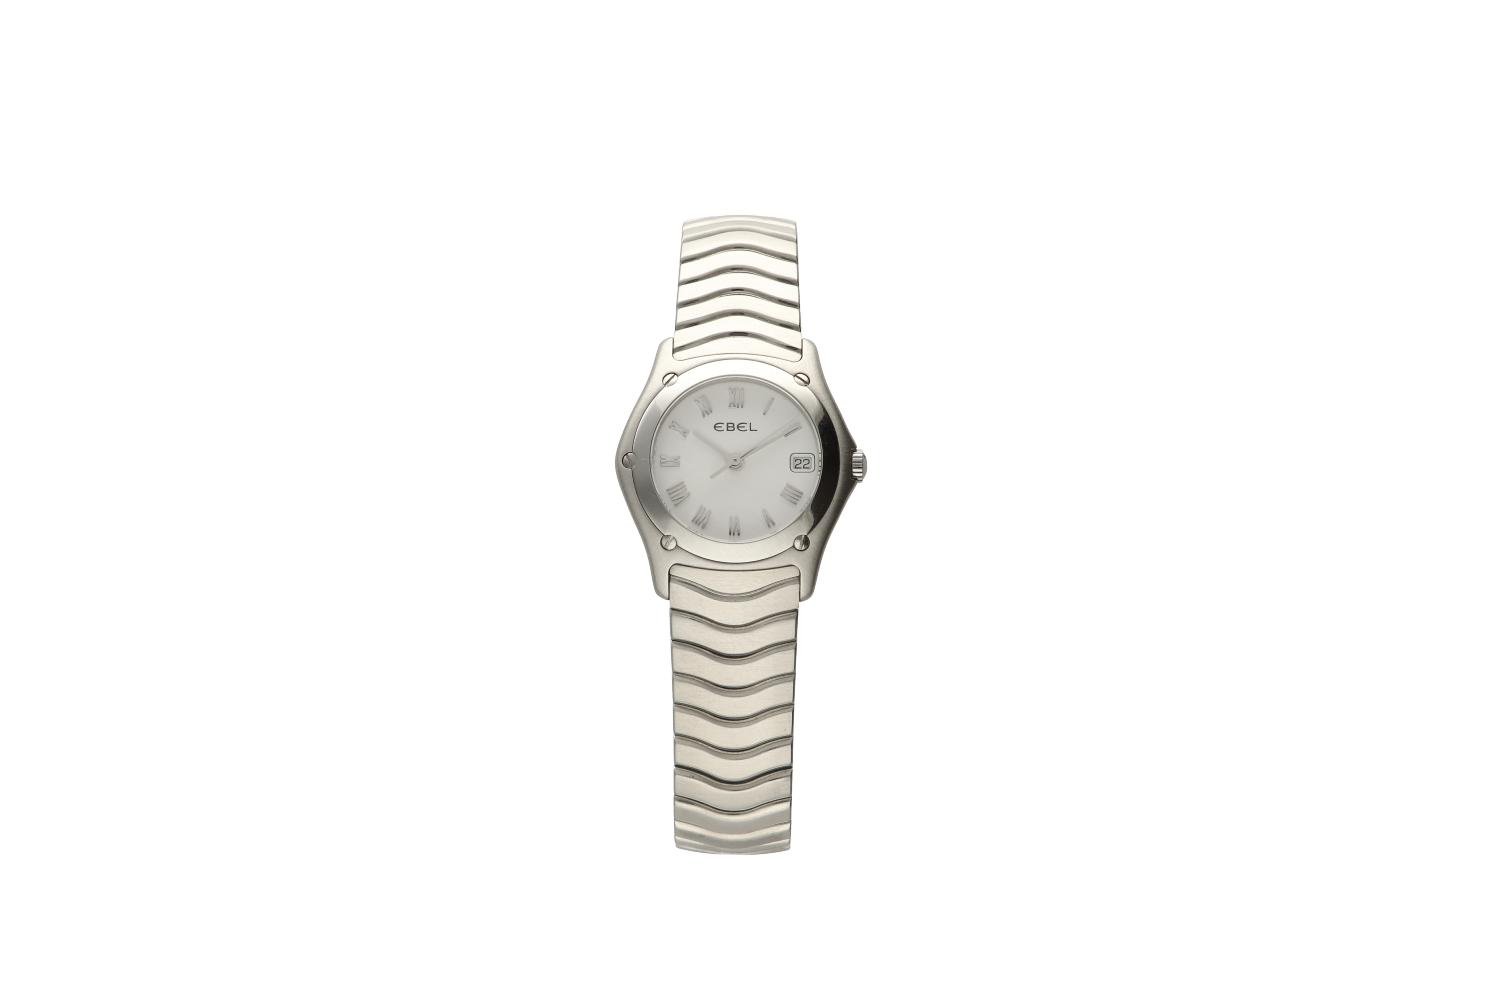 Ρολόι γυναικείο  EBEL CLASSIC WAVE 9087F21/0225 με μπρασελέ σε ατσάλι και χρυσό 18Κ  S/N 56503241